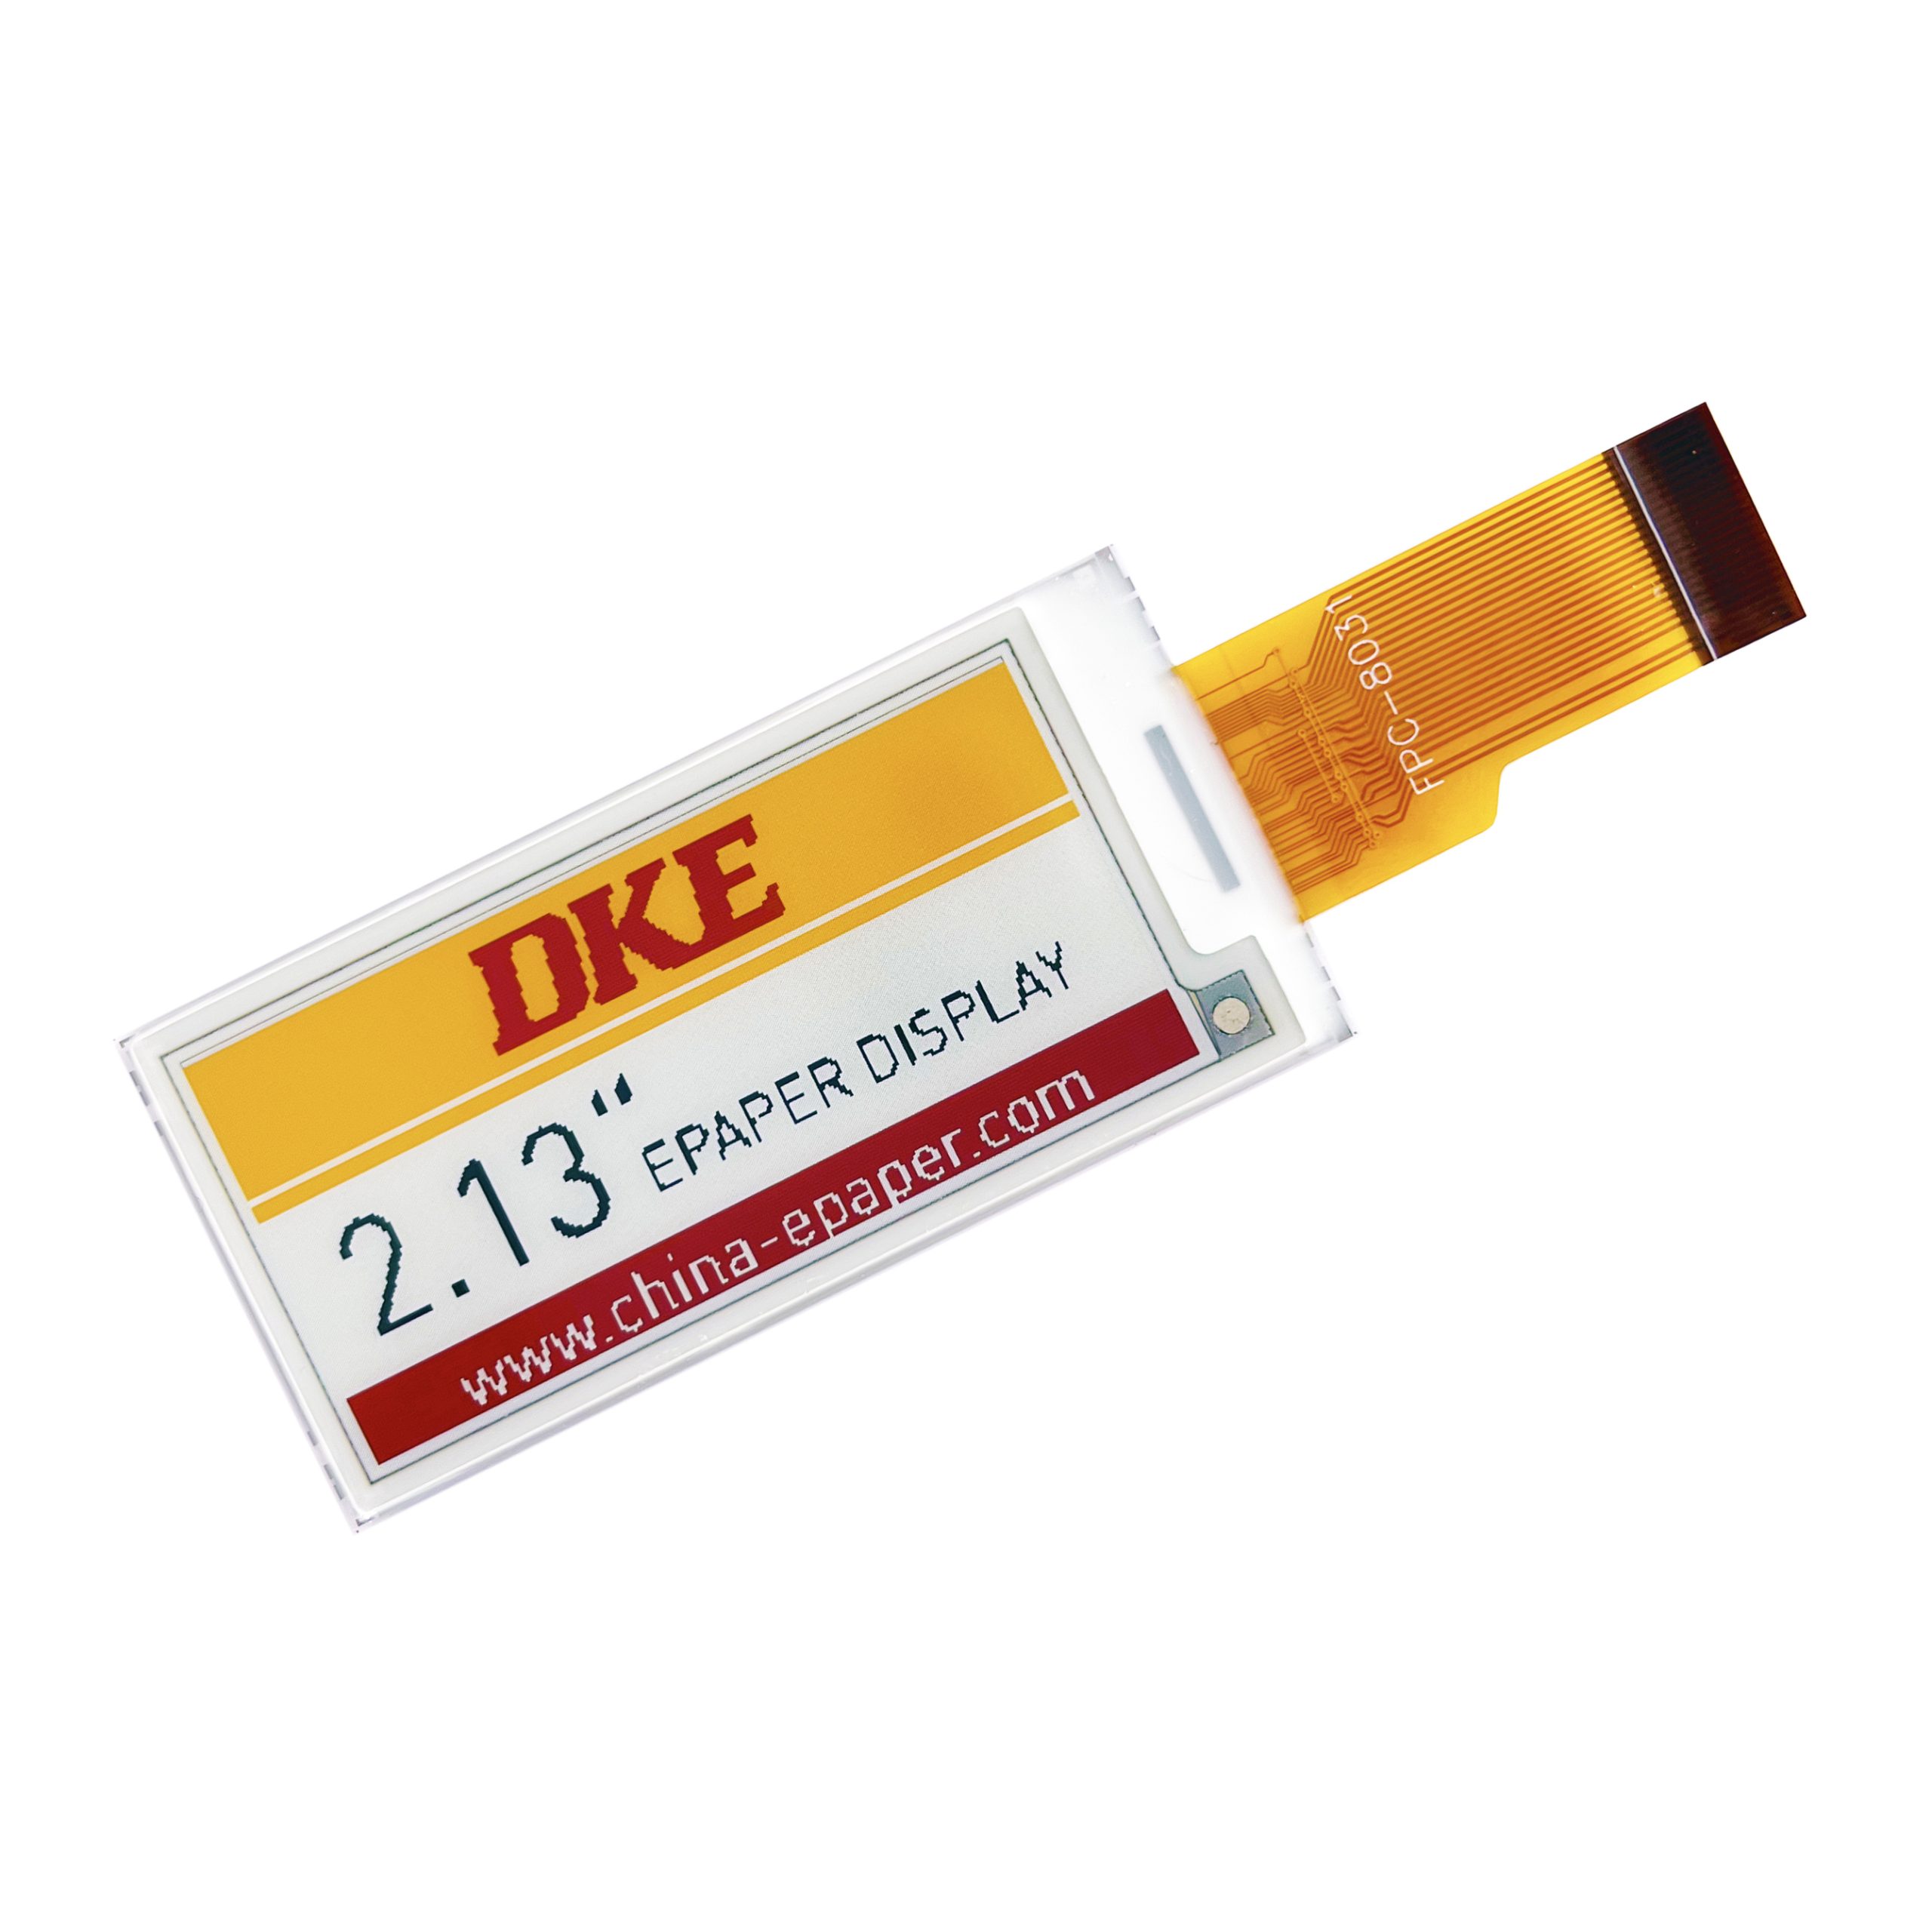 DKE 2.13 inch Epaper Display-E5